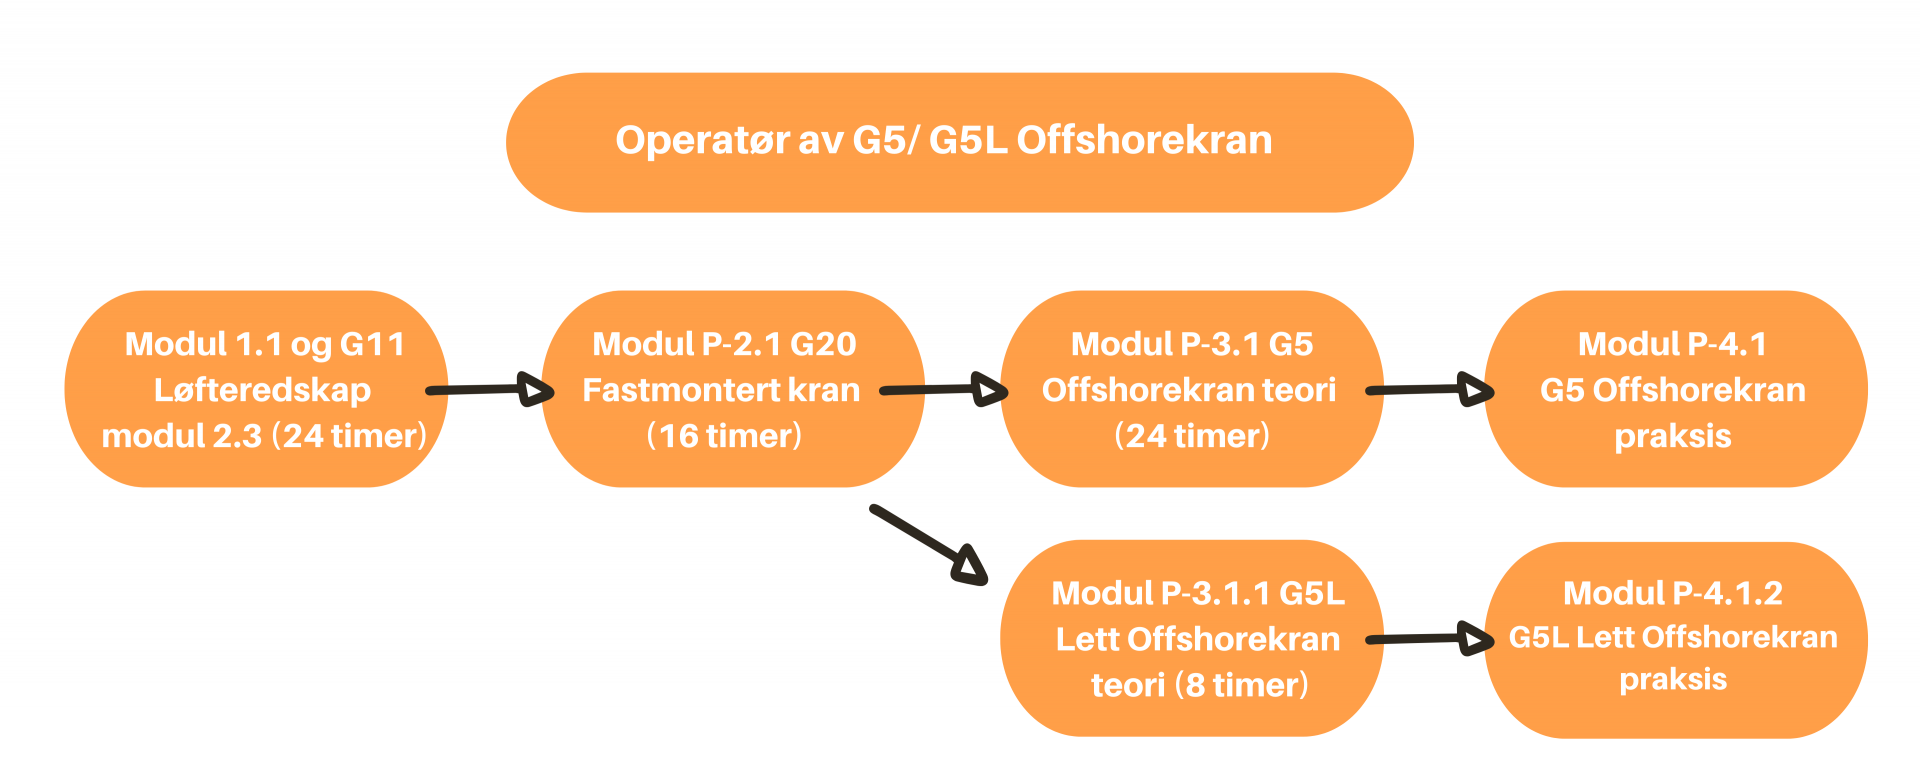 G5 Offshorekran -